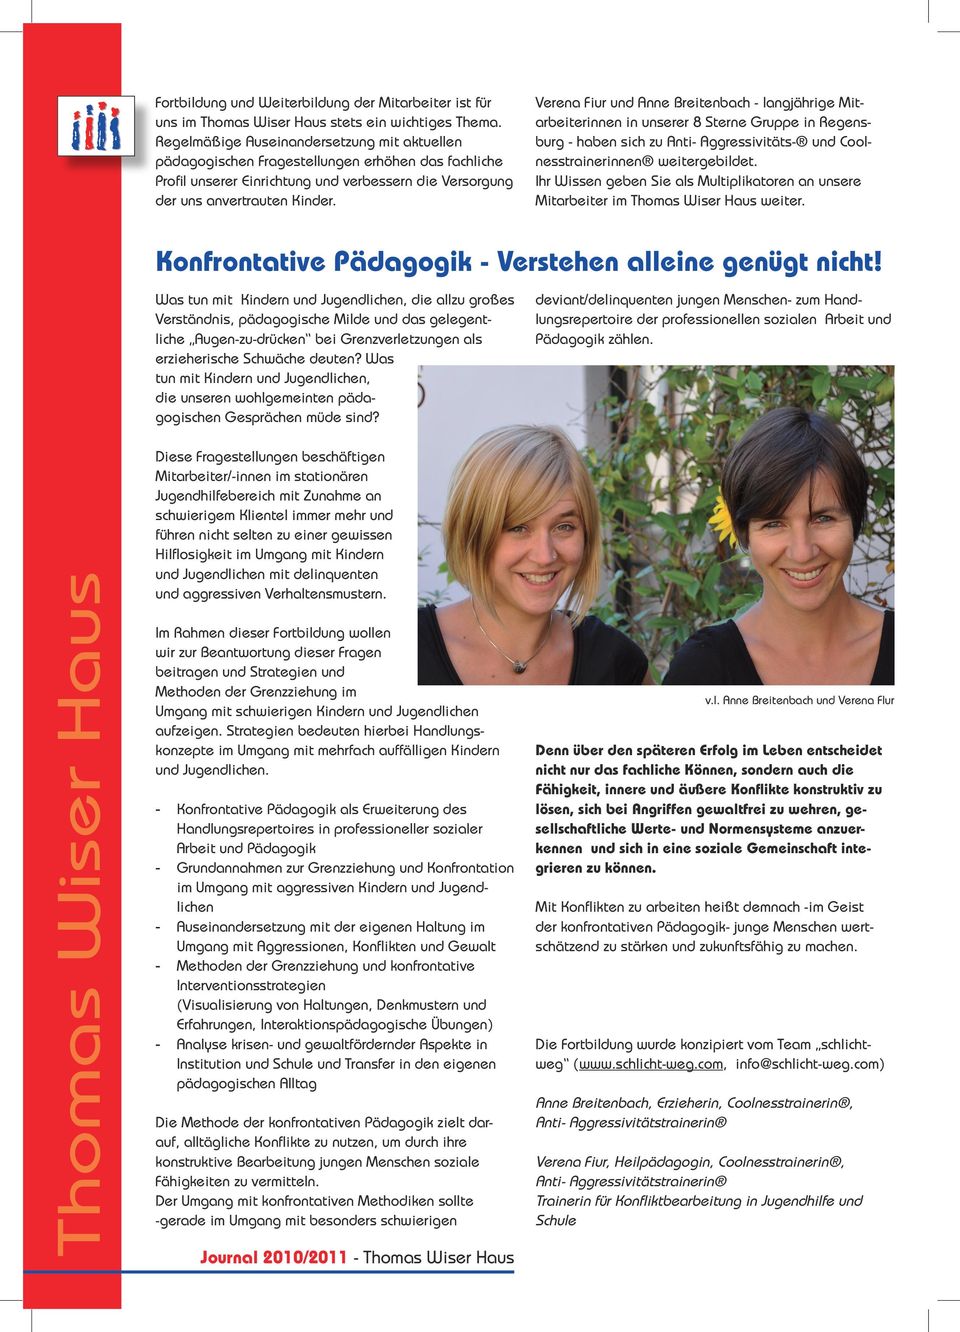 Verena Fiur und Anne Breitenbach - langjährige Mitarbeiterinnen in unserer 8 Sterne Gruppe in Regensburg - haben sich zu Anti- Aggressivitäts- und Coolnesstrainerinnen weitergebildet.